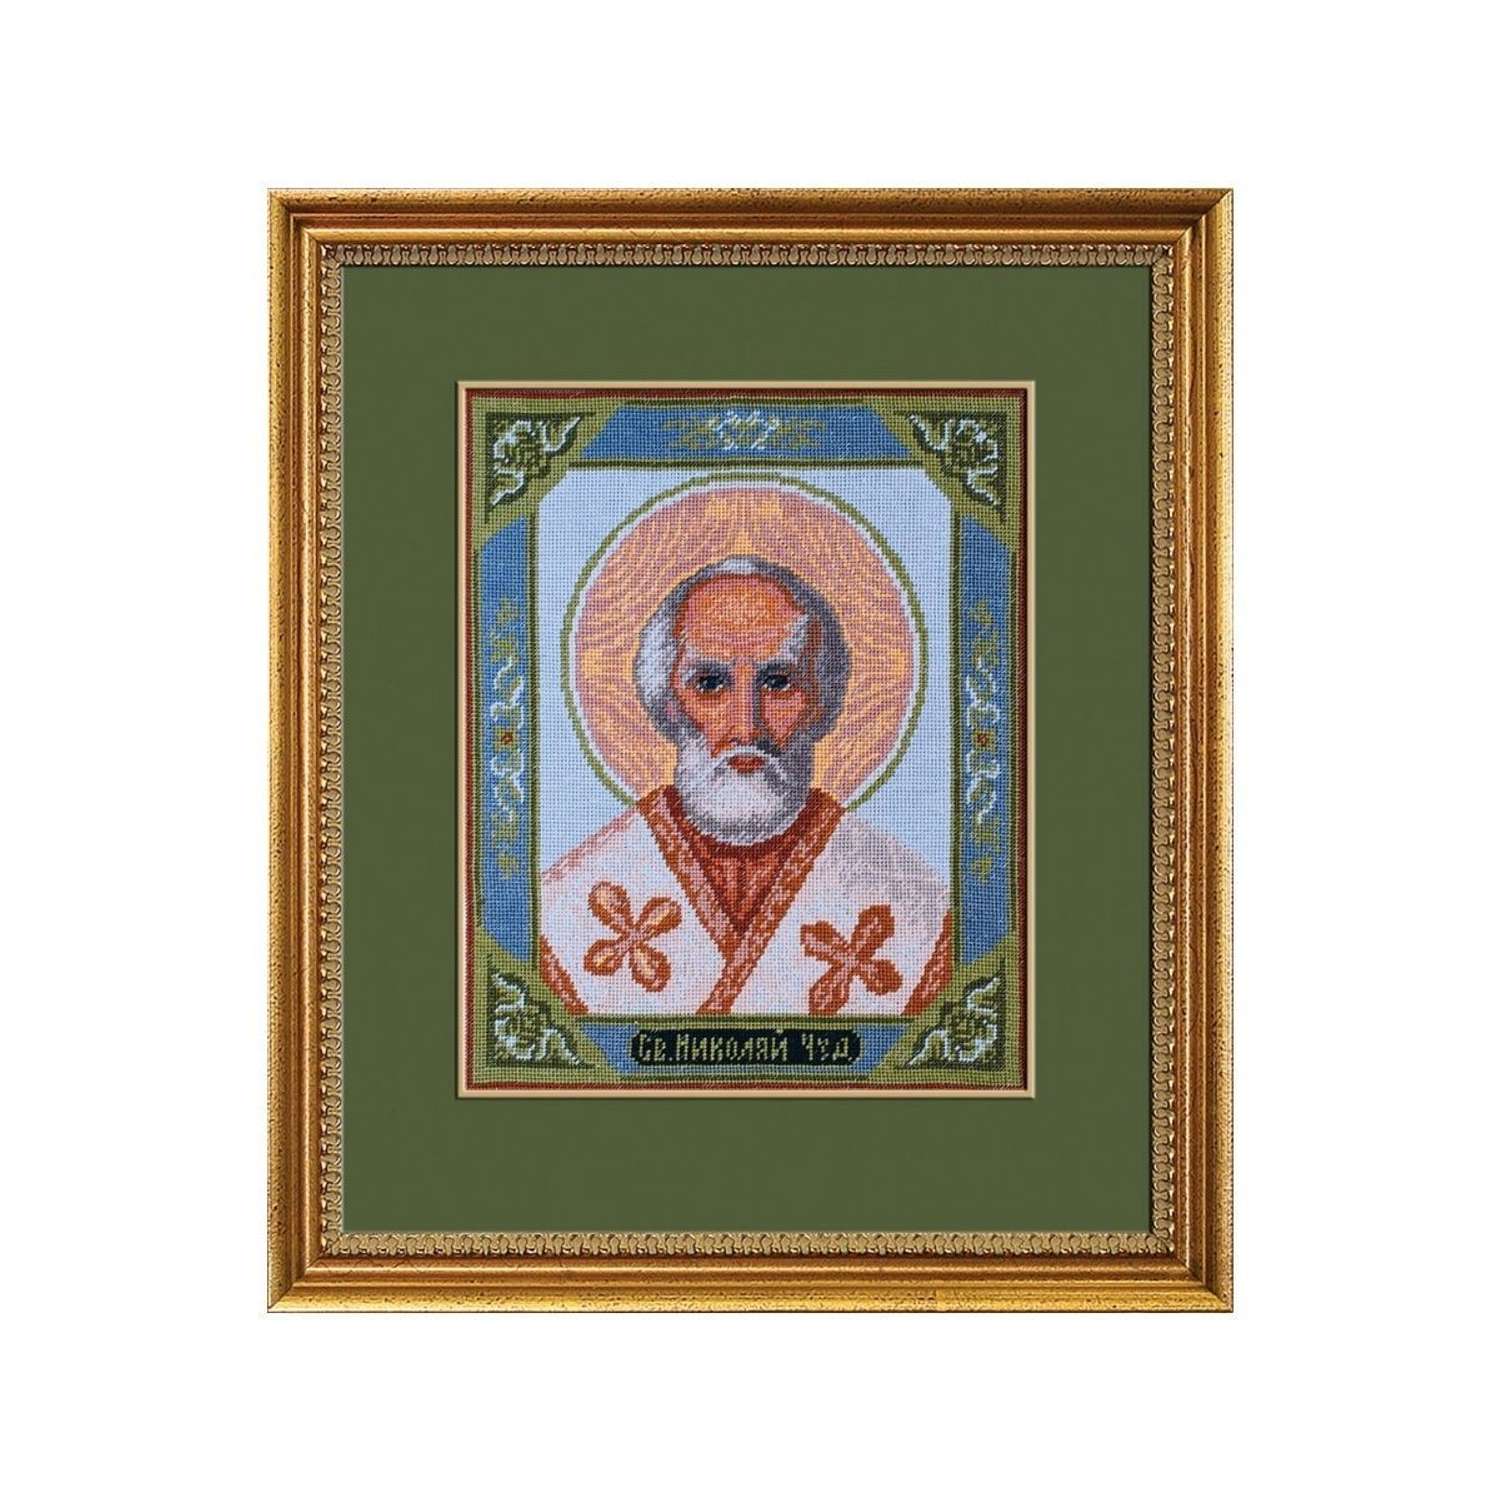 Набор для вышивания РС Студия крестом иконы 130 Николай - чудотворец 28х23см - фото 3